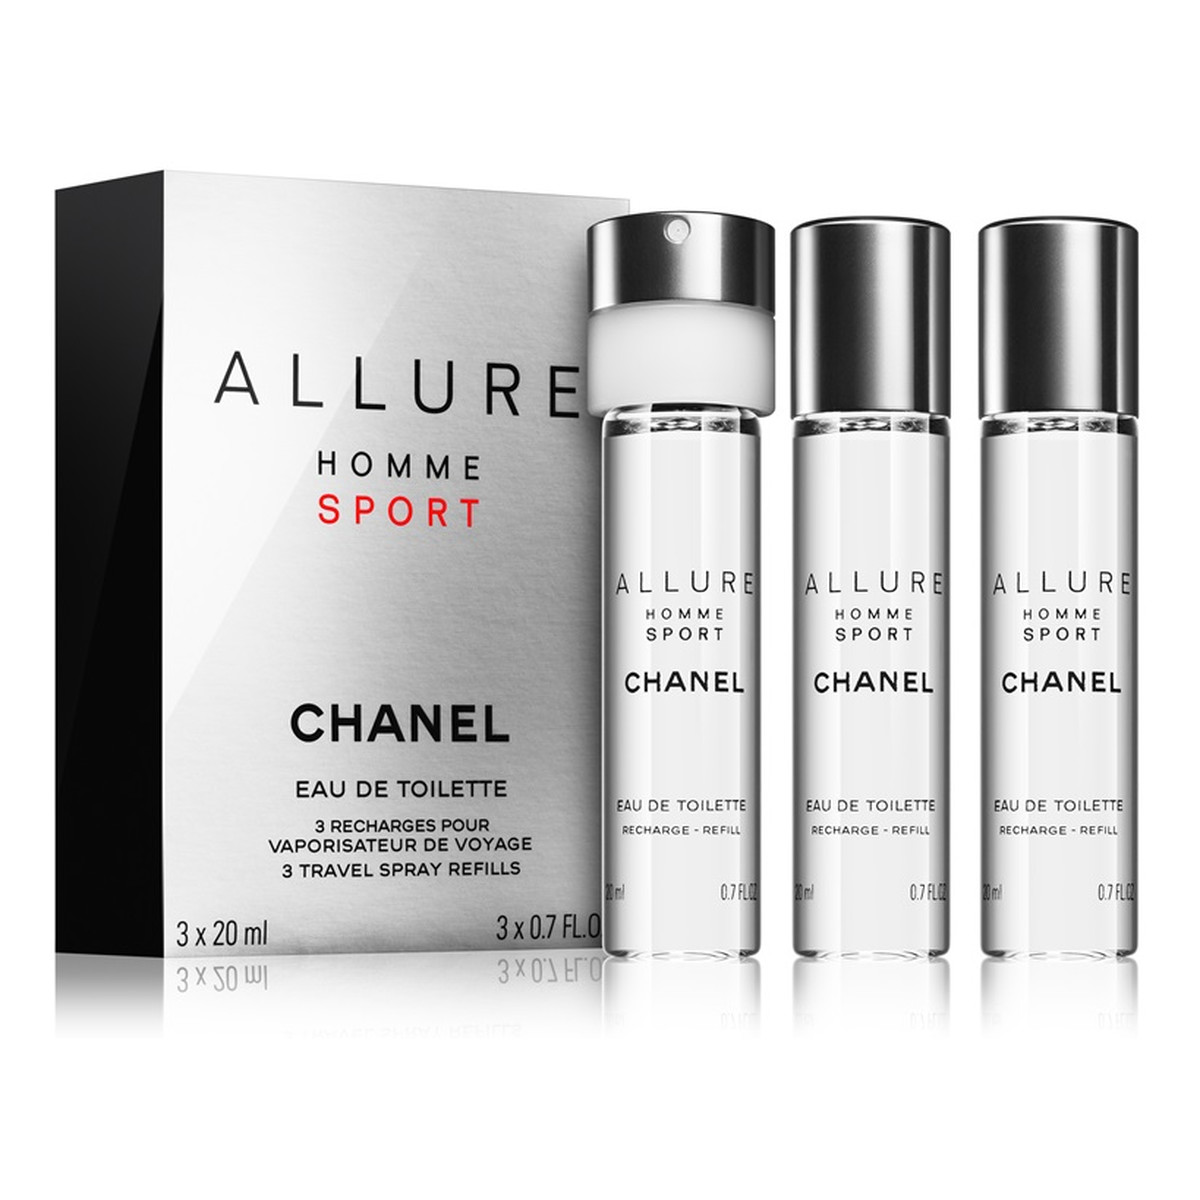 Chanel Allure Homme Sport woda toaletowa z wymiennym wkładem 3x20ml 60ml